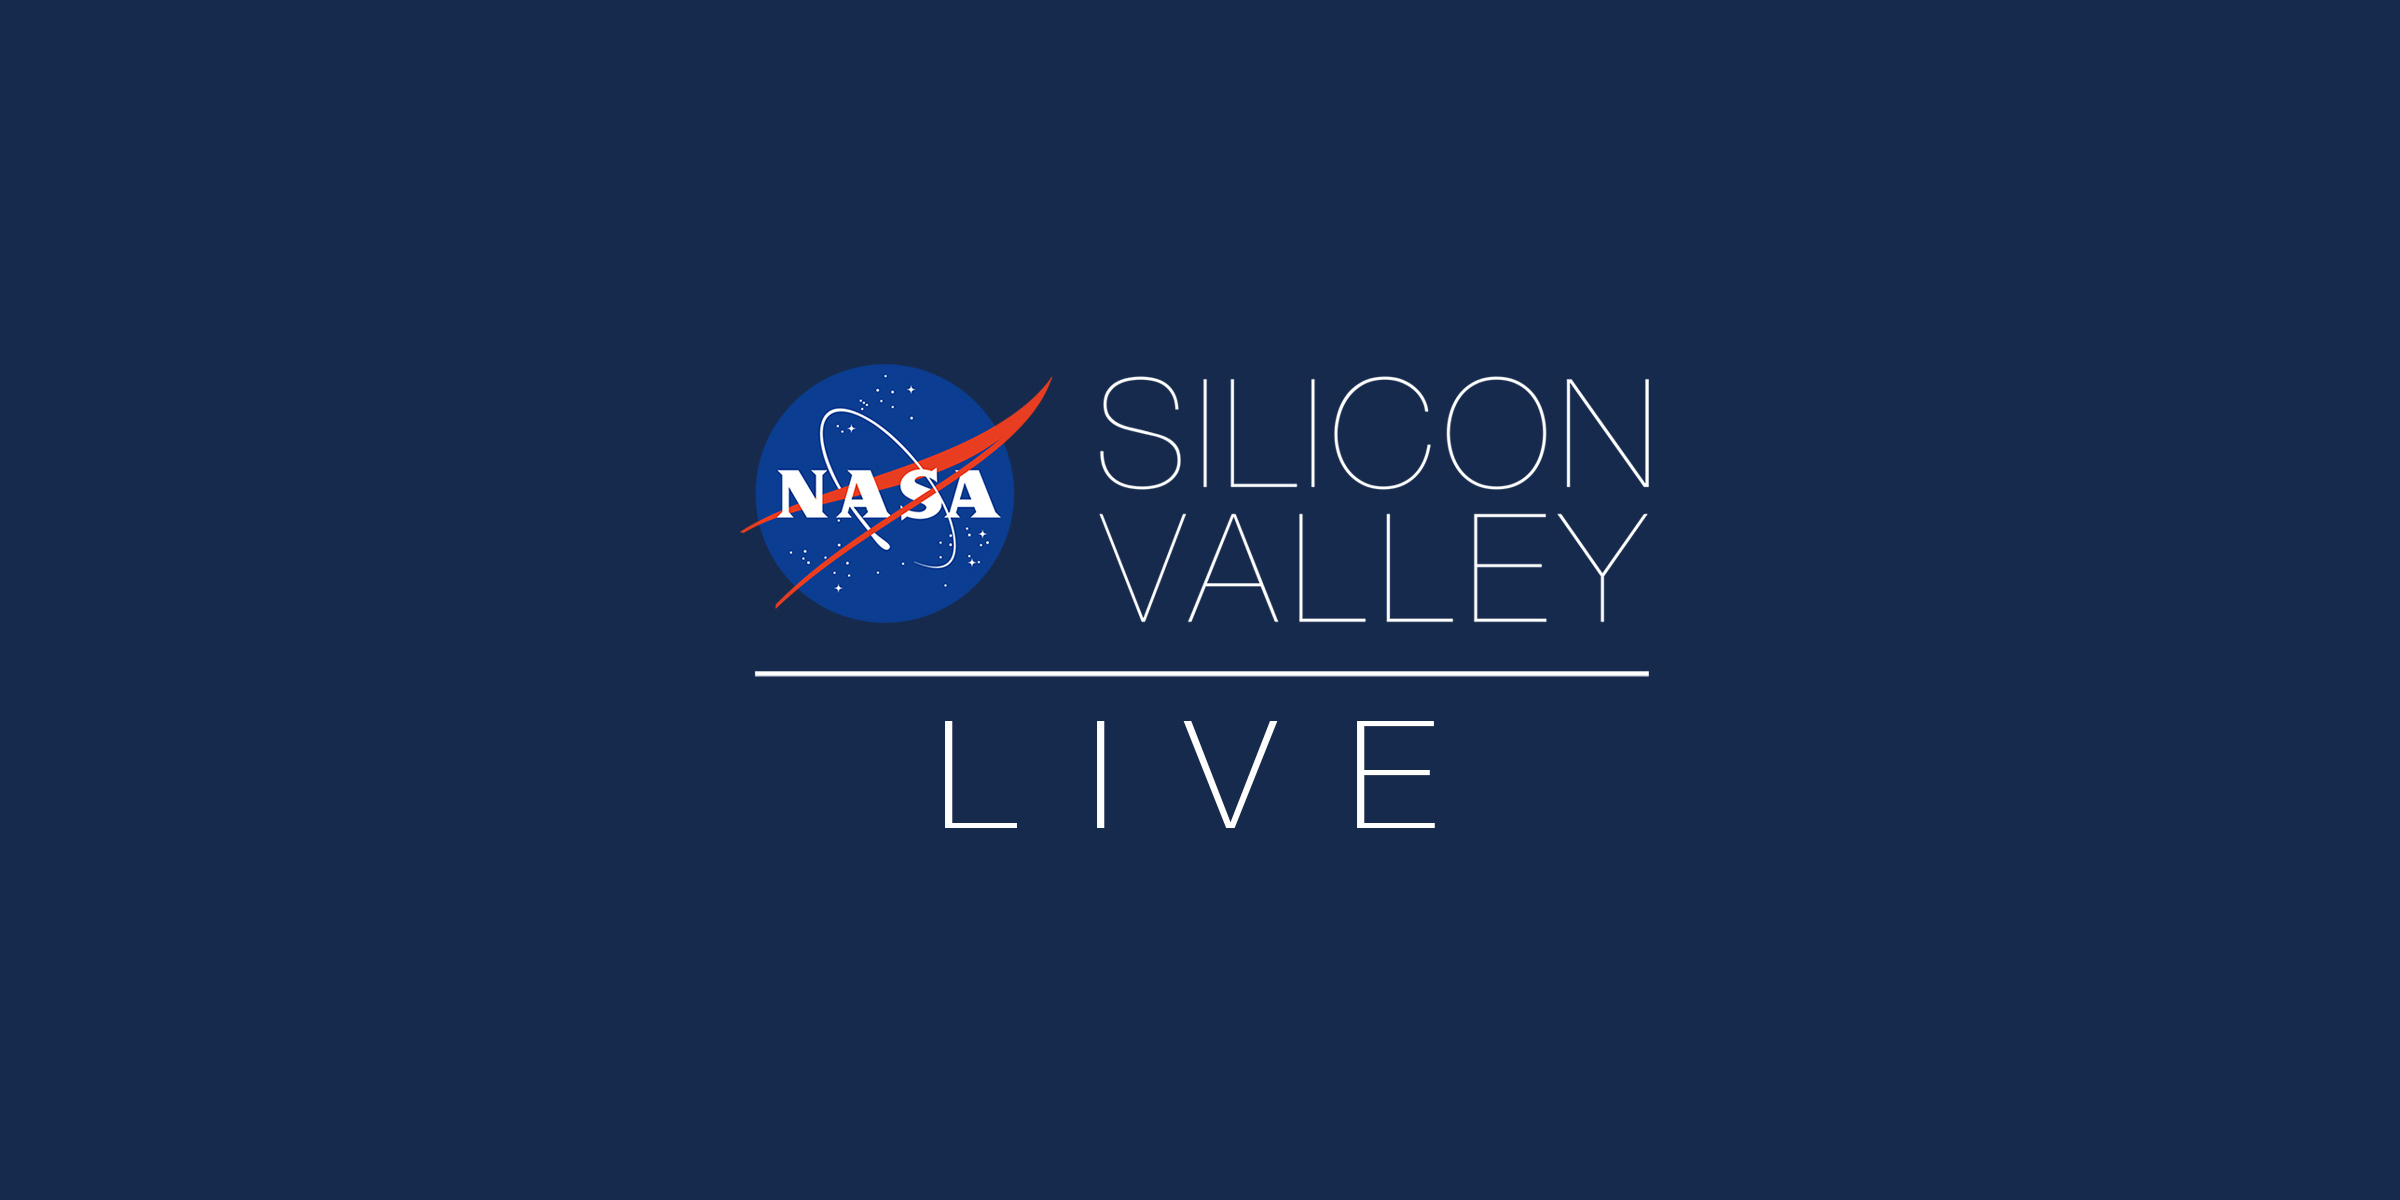 NASA in Silicon Valley Live - How to Get an Internship at NASA